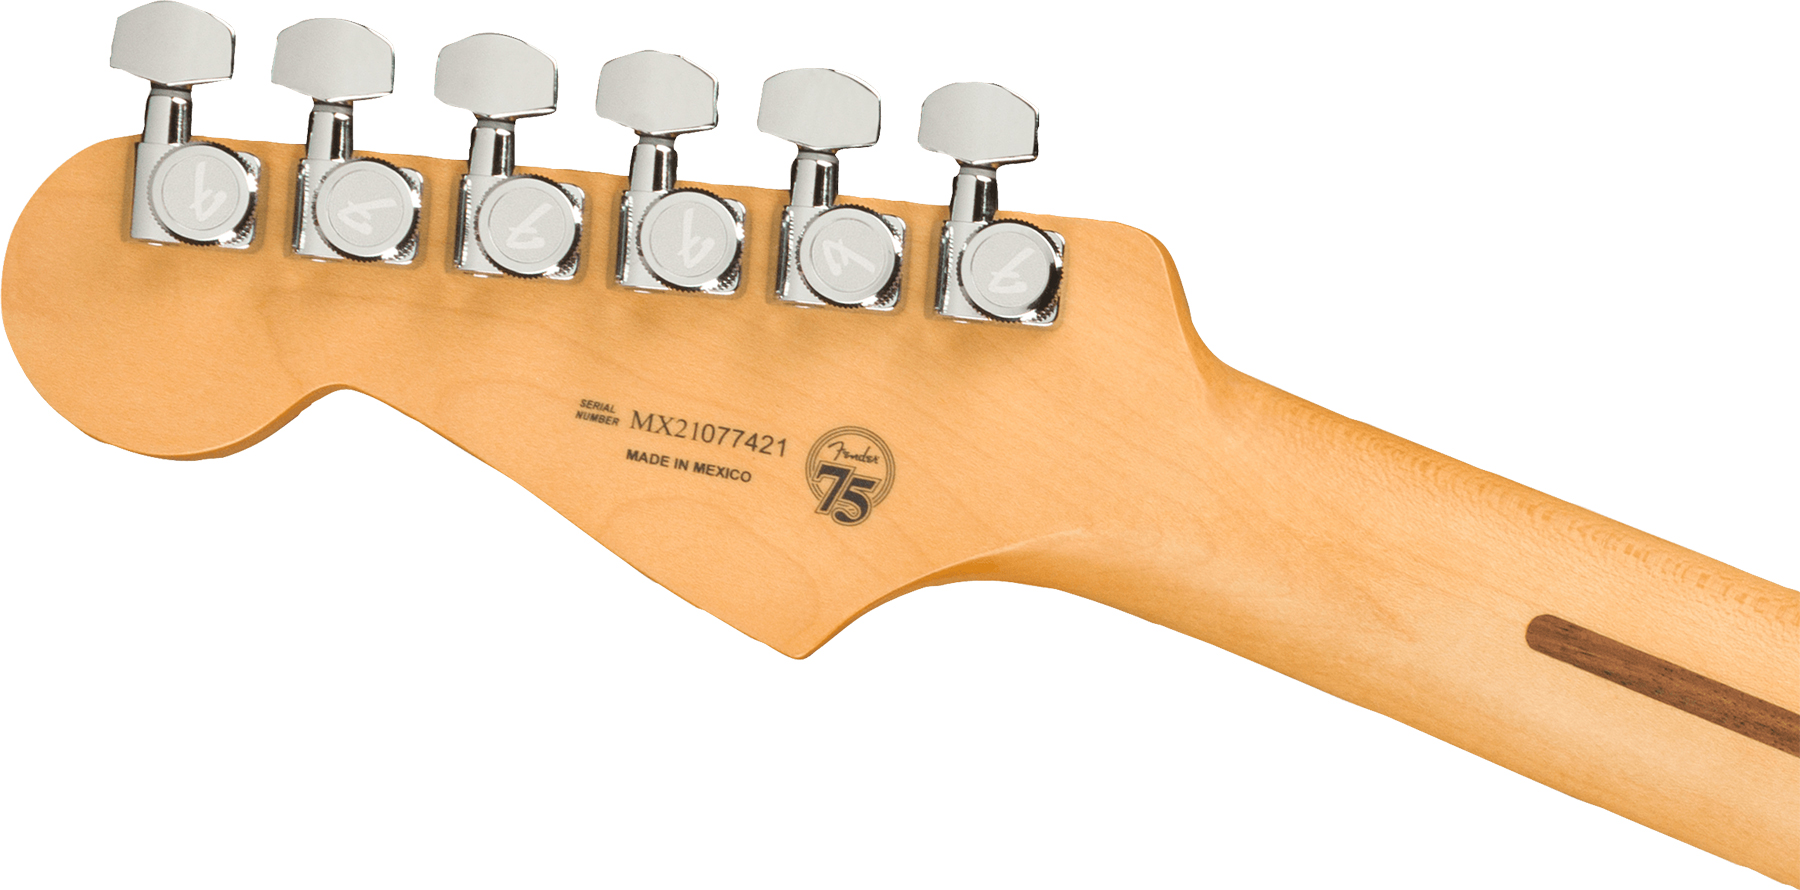 Fender Strat Player Plus Mex Hss Trem Pf - Belair Blue - E-Gitarre in Str-Form - Variation 3